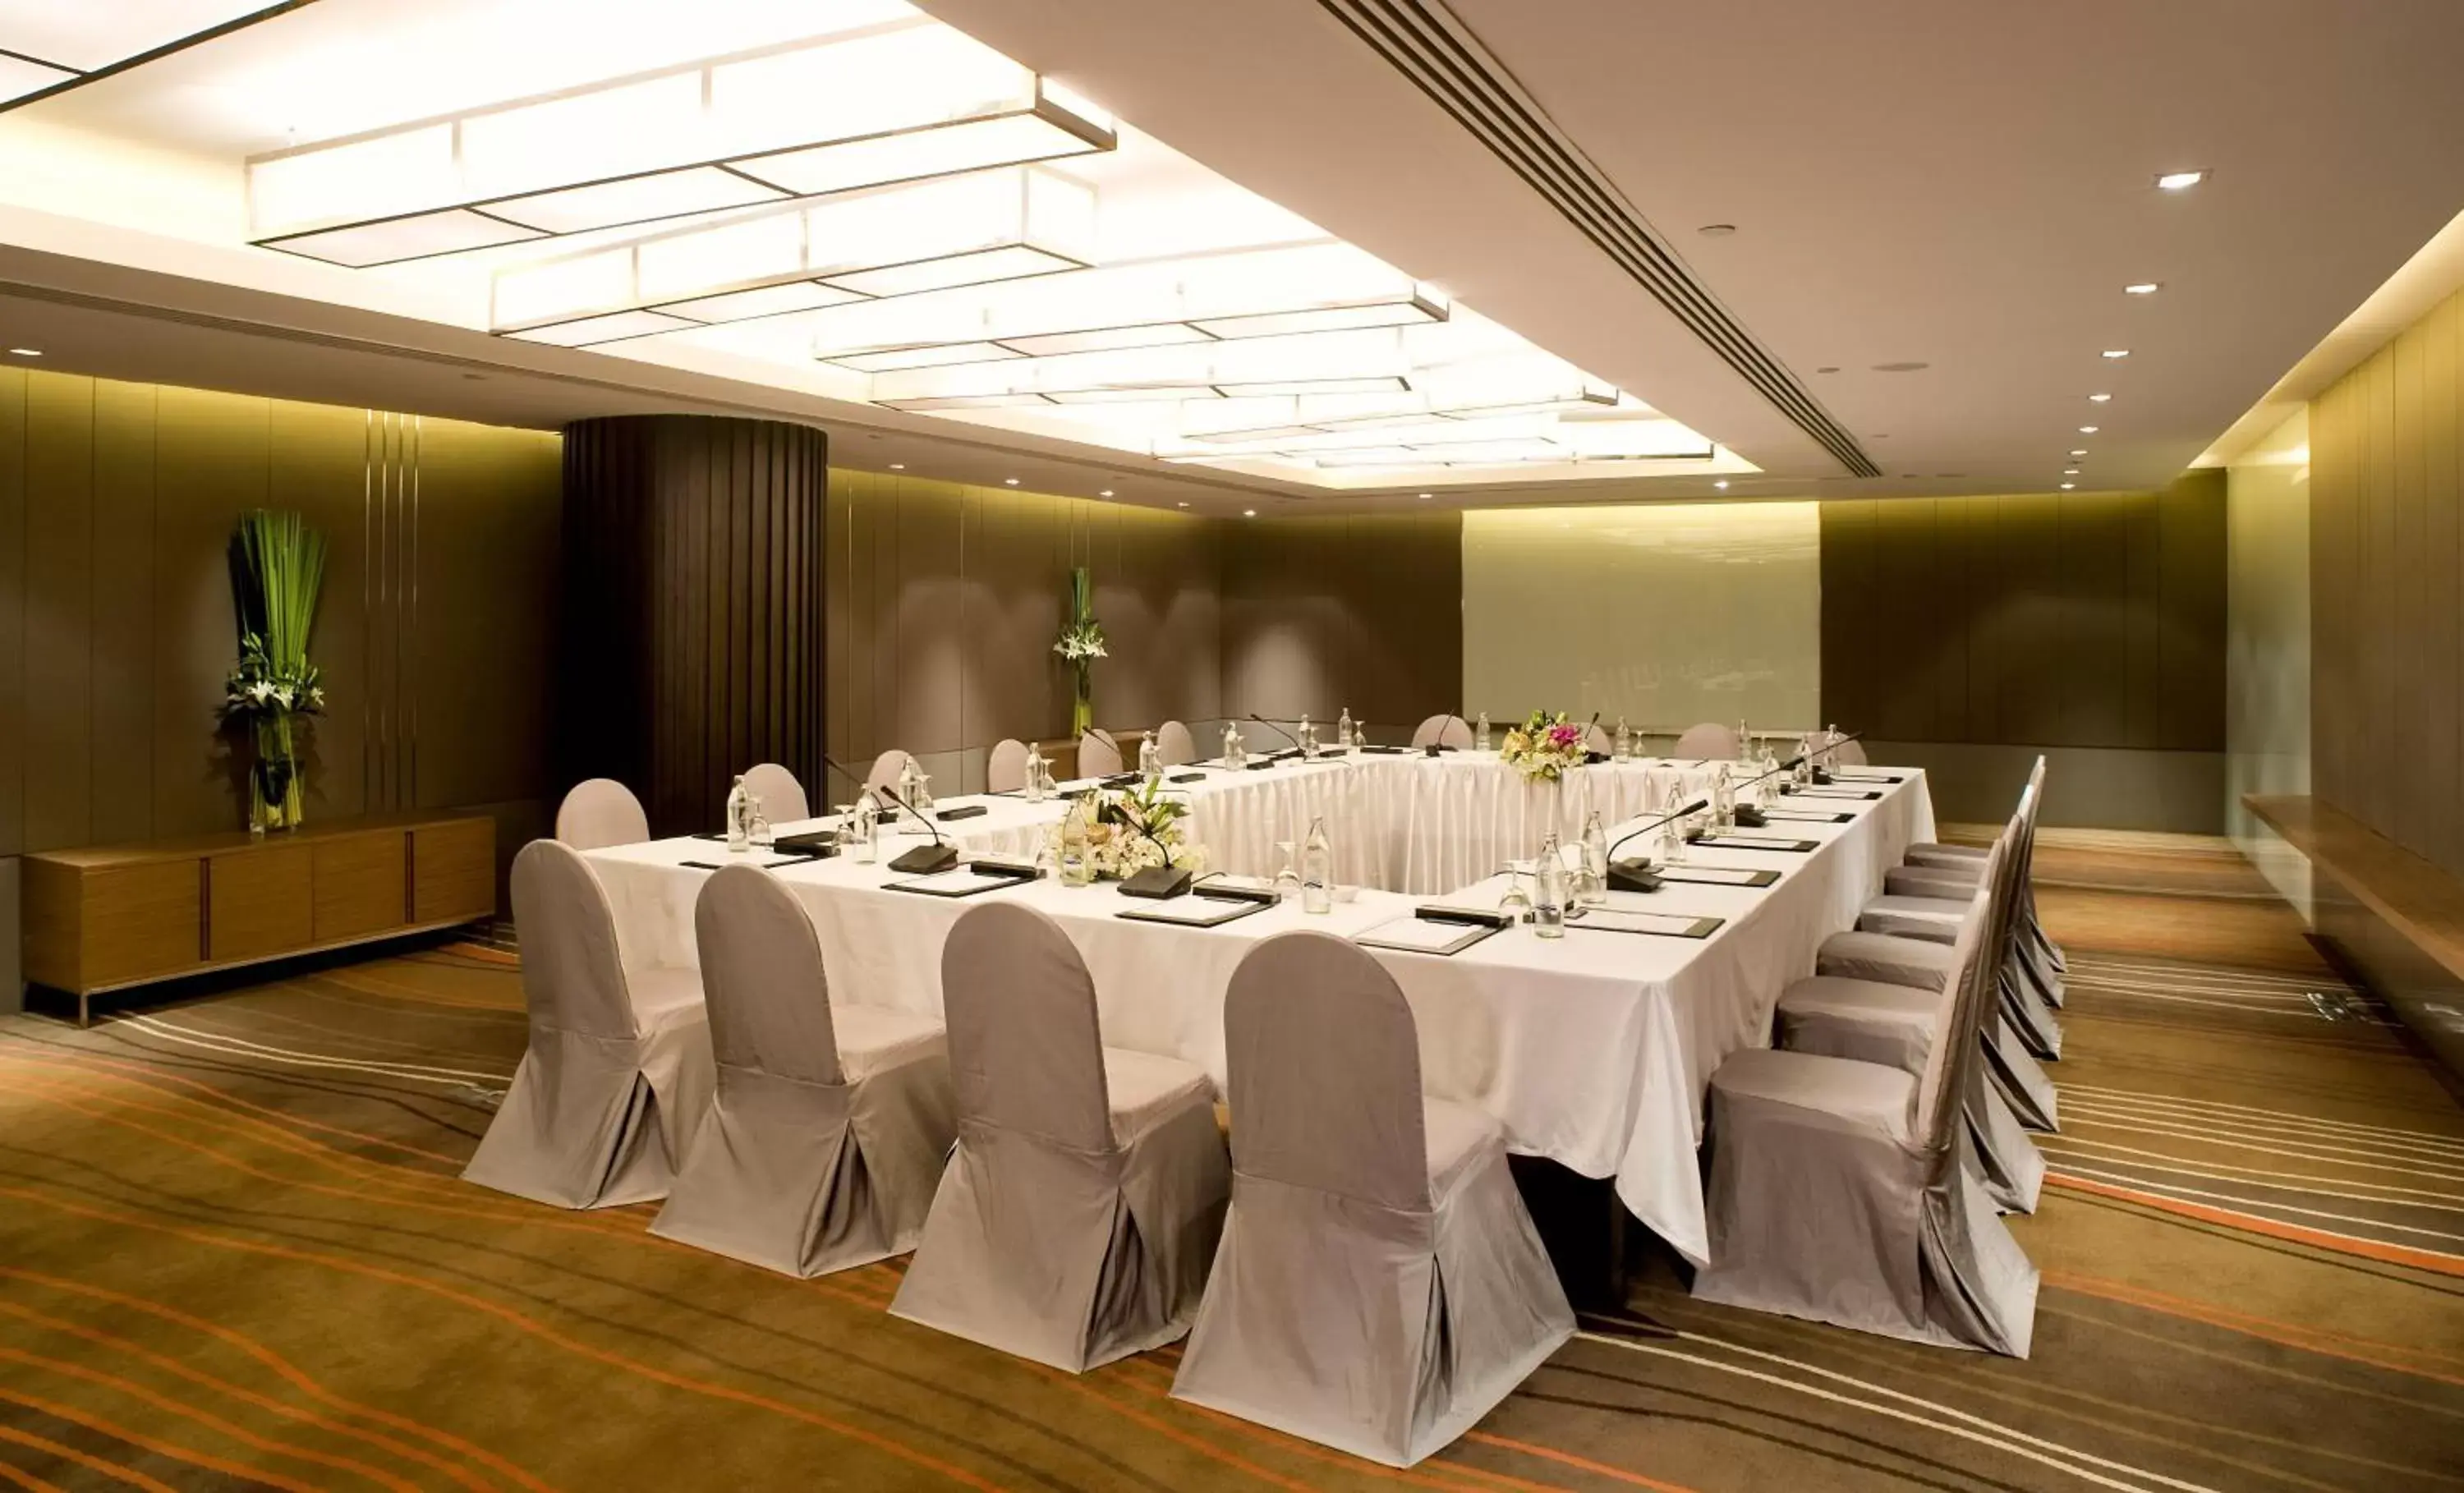 Meeting/conference room, Banquet Facilities in Centara Grand at Central Plaza Ladprao Bangkok